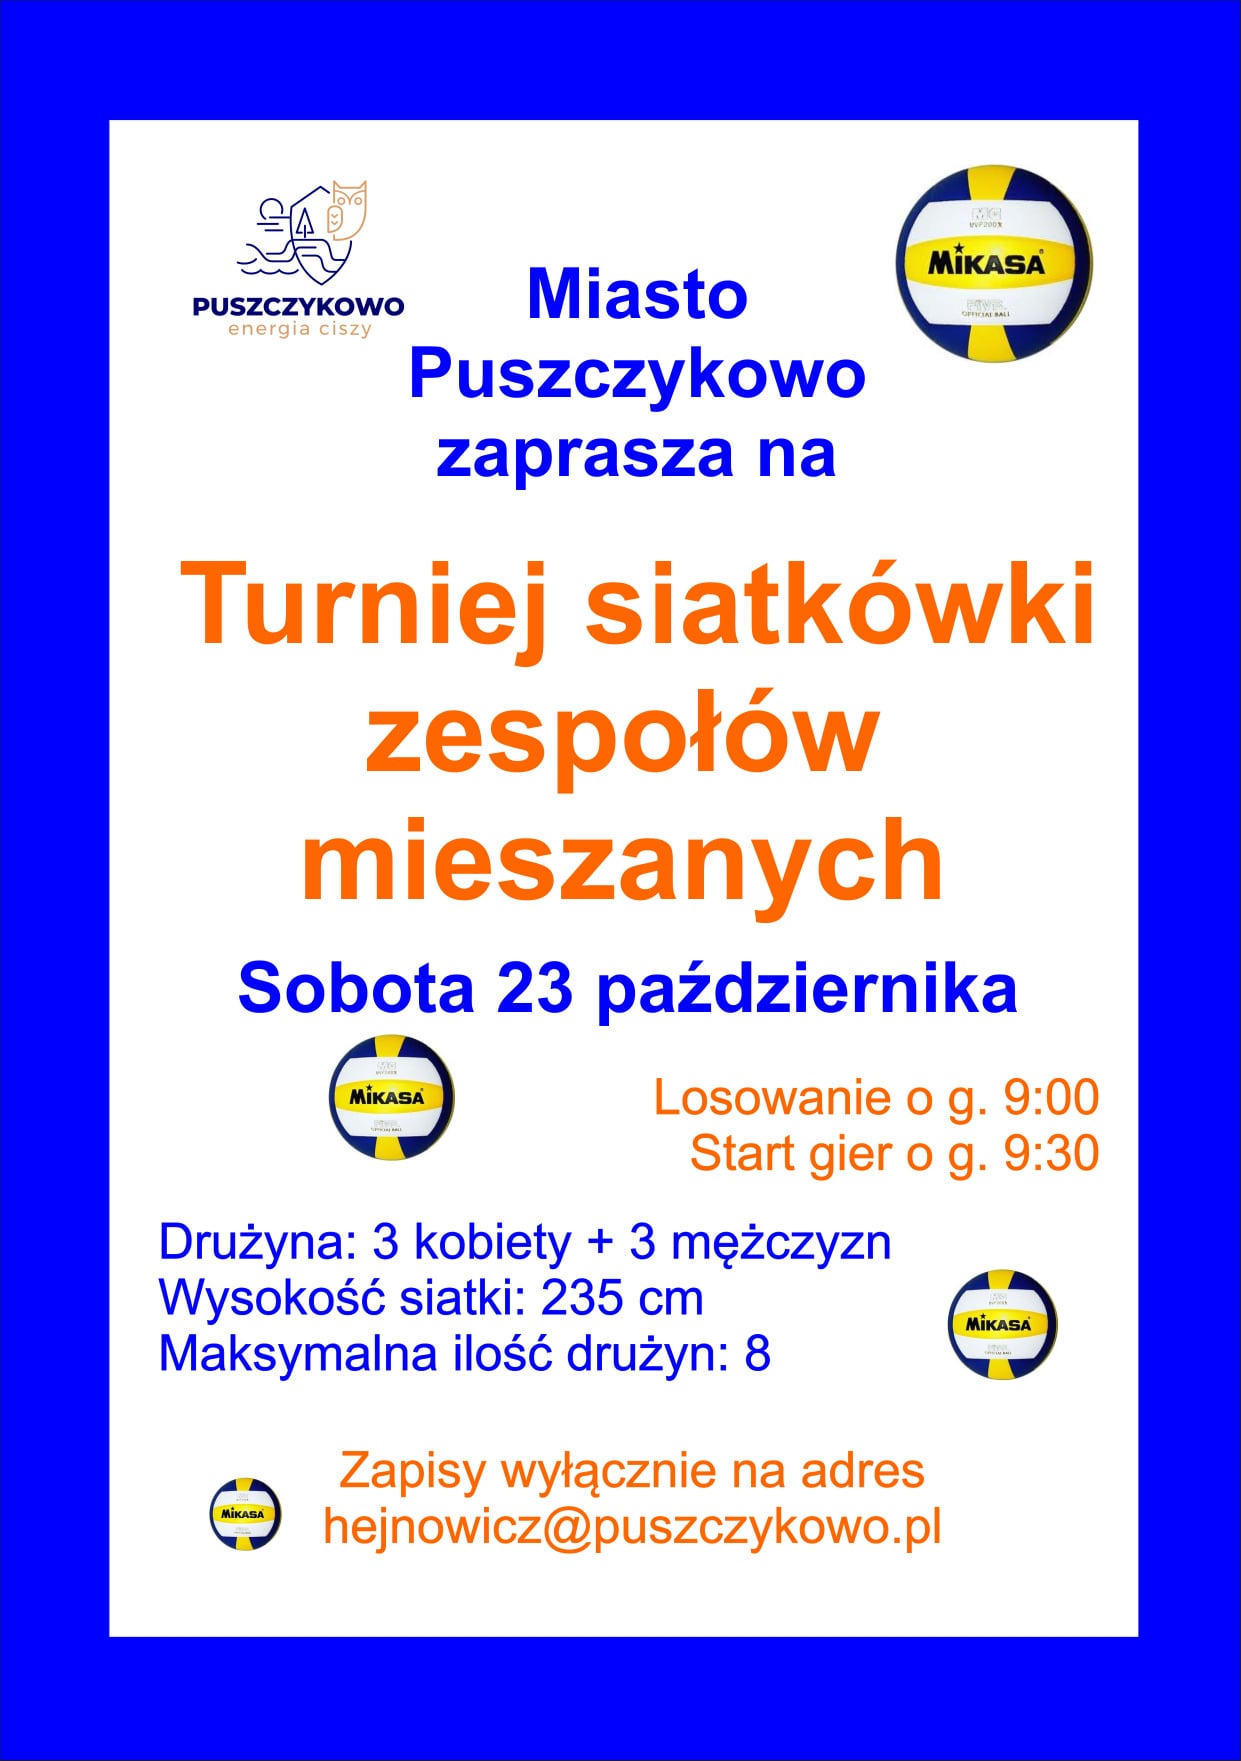 Miasto Puszczykowo zaprasza na turniej siatkówki zespołów mieszanych.